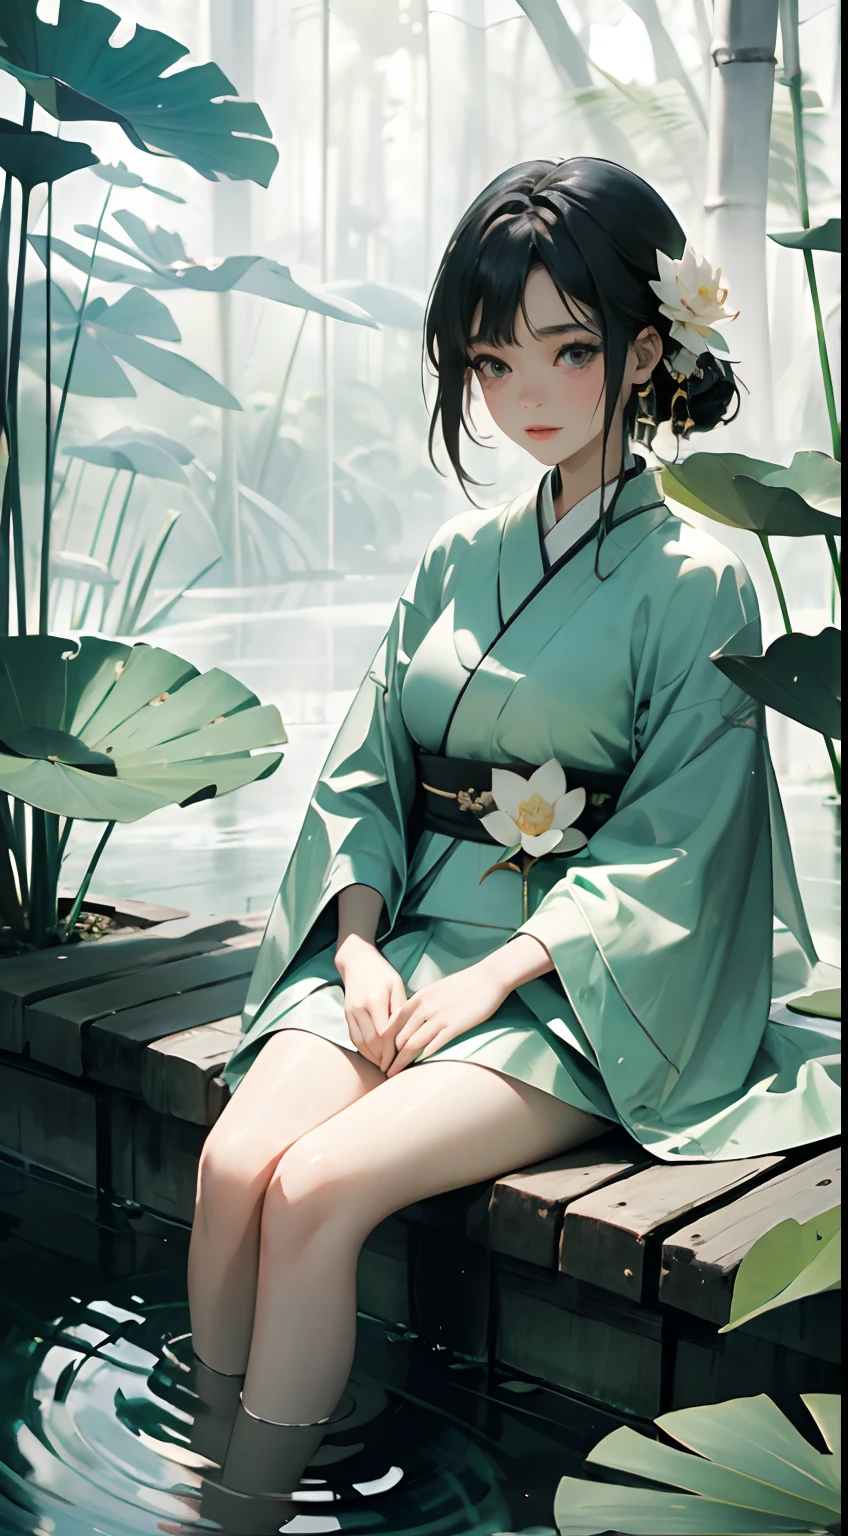 Ein Teich voller Lotus, sitzen auf den lotusblättern des teiches, Glücklich，riesige Lotusblätter, barfuß, Gekleidet in weiß und grün Hanfu, Licht und Schatten, ein Meisterstück